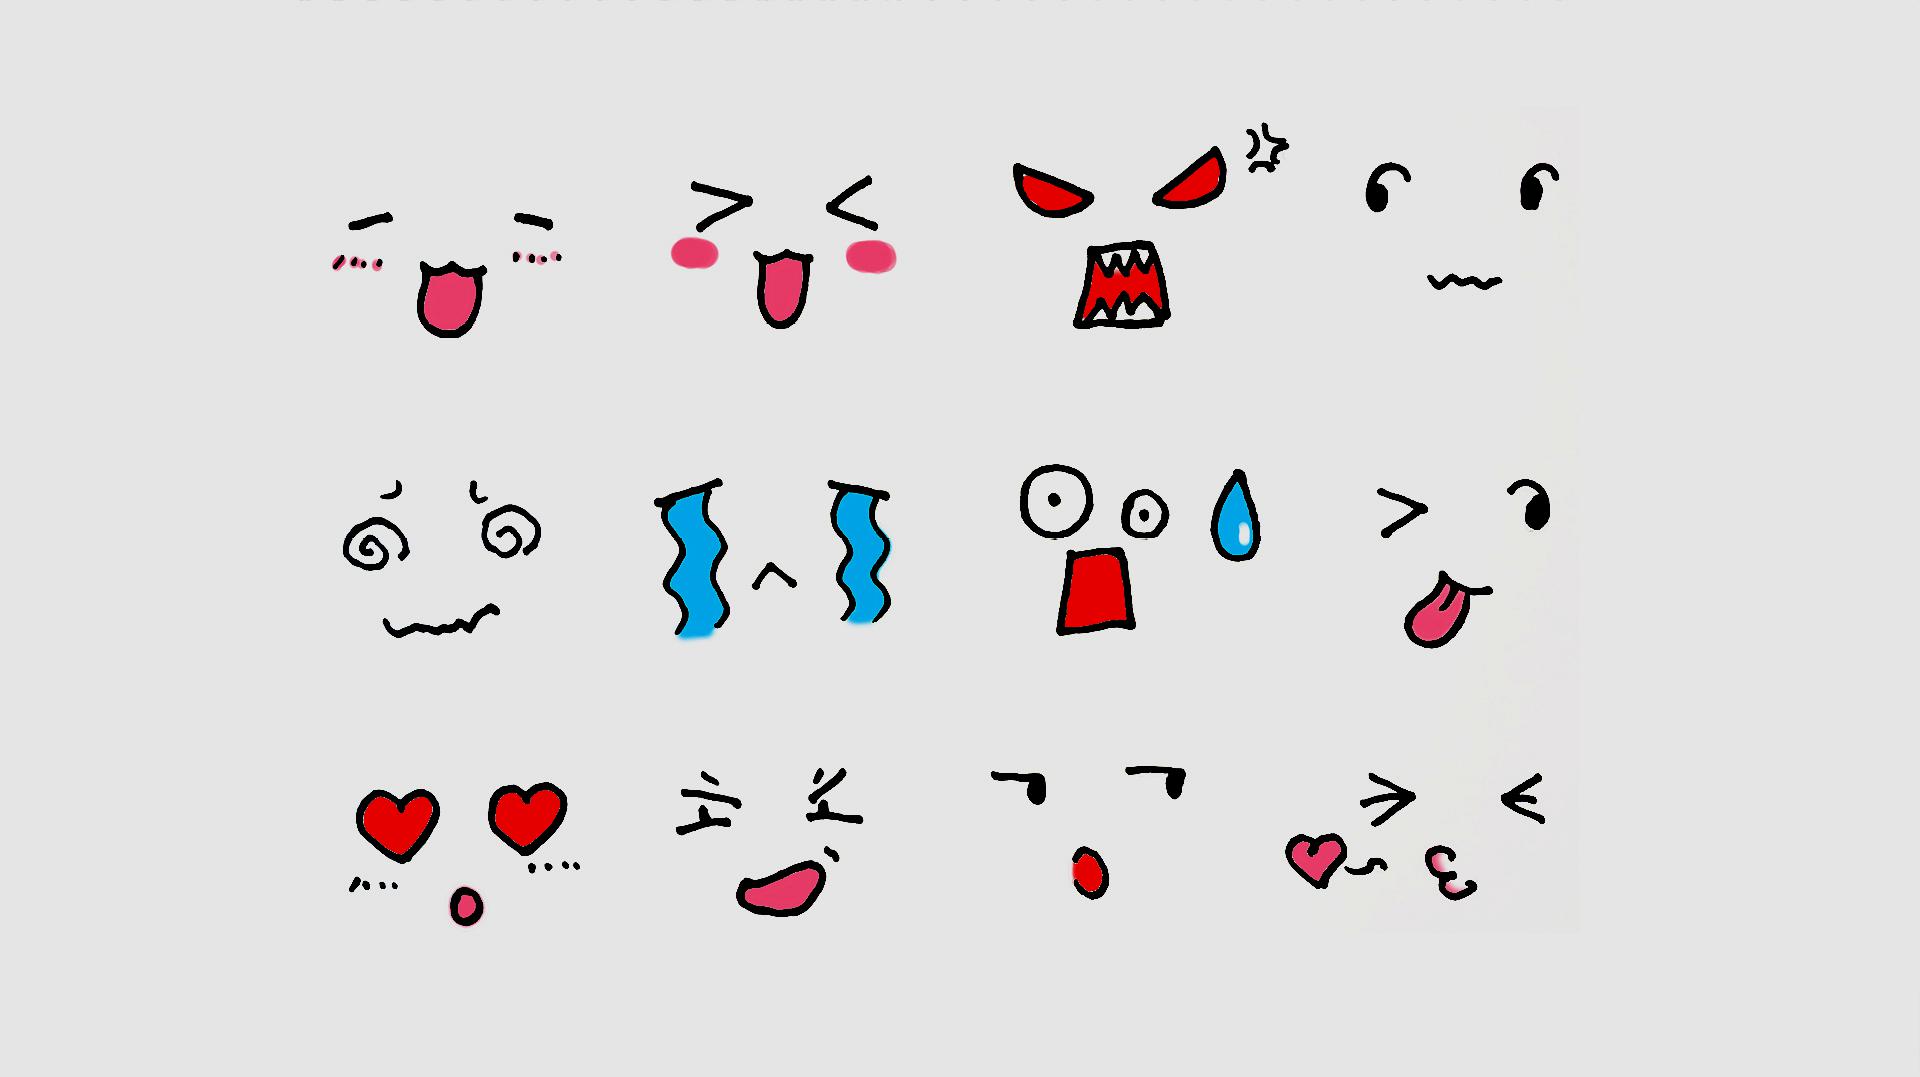 可爱!12种不同表情简笔画,选一款匹配你此刻的心情吧